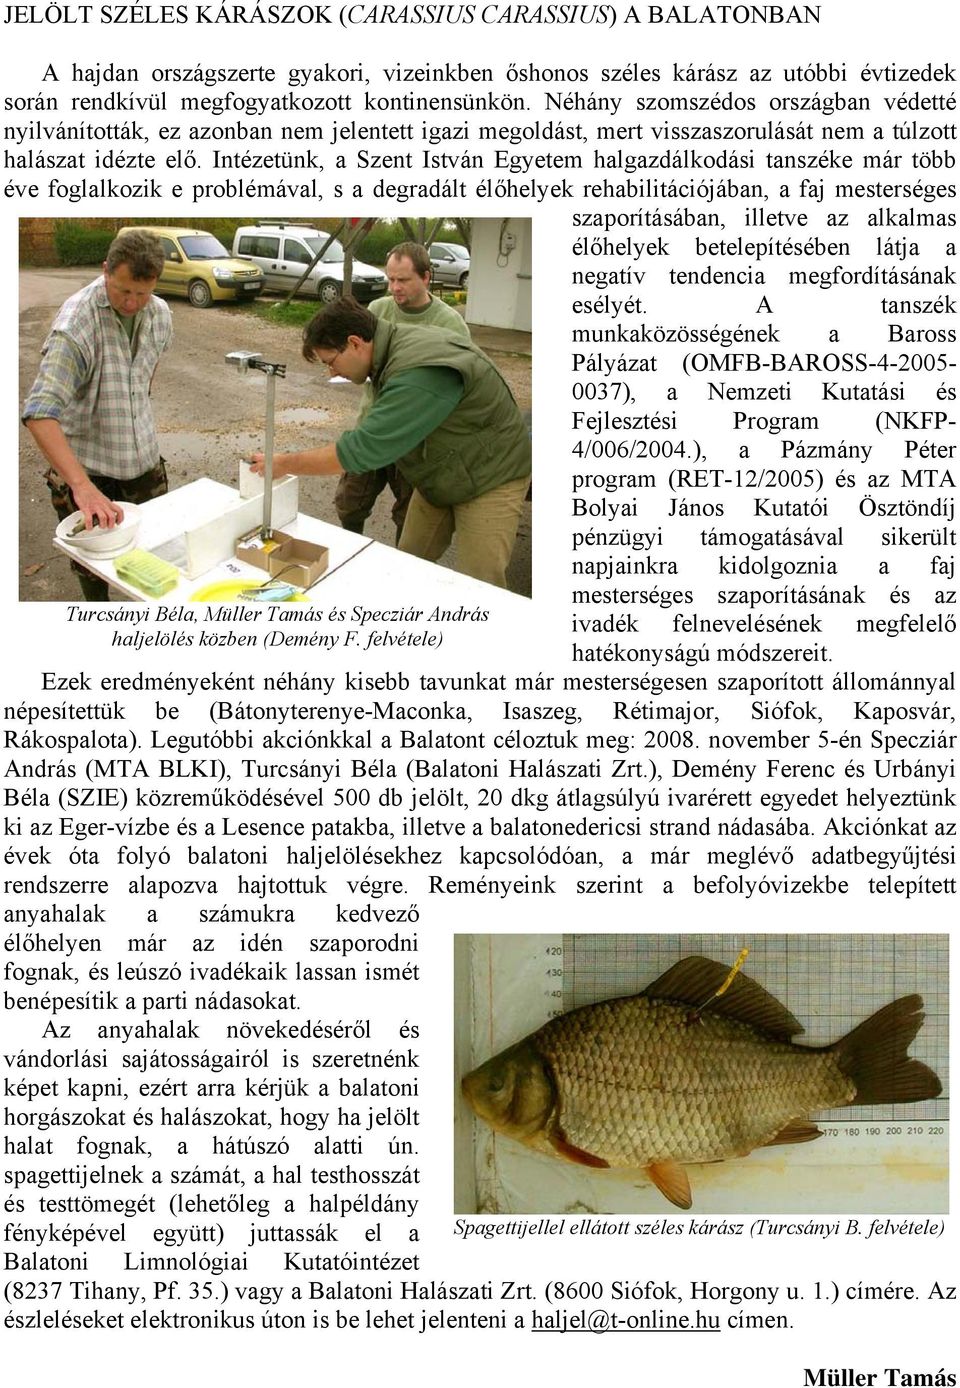 Intézetünk, a Szent István Egyetem halgazdálkodási tanszéke már több éve foglalkozik e problémával, s a degradált élőhelyek rehabilitációjában, a faj mesterséges szaporításában, illetve az alkalmas